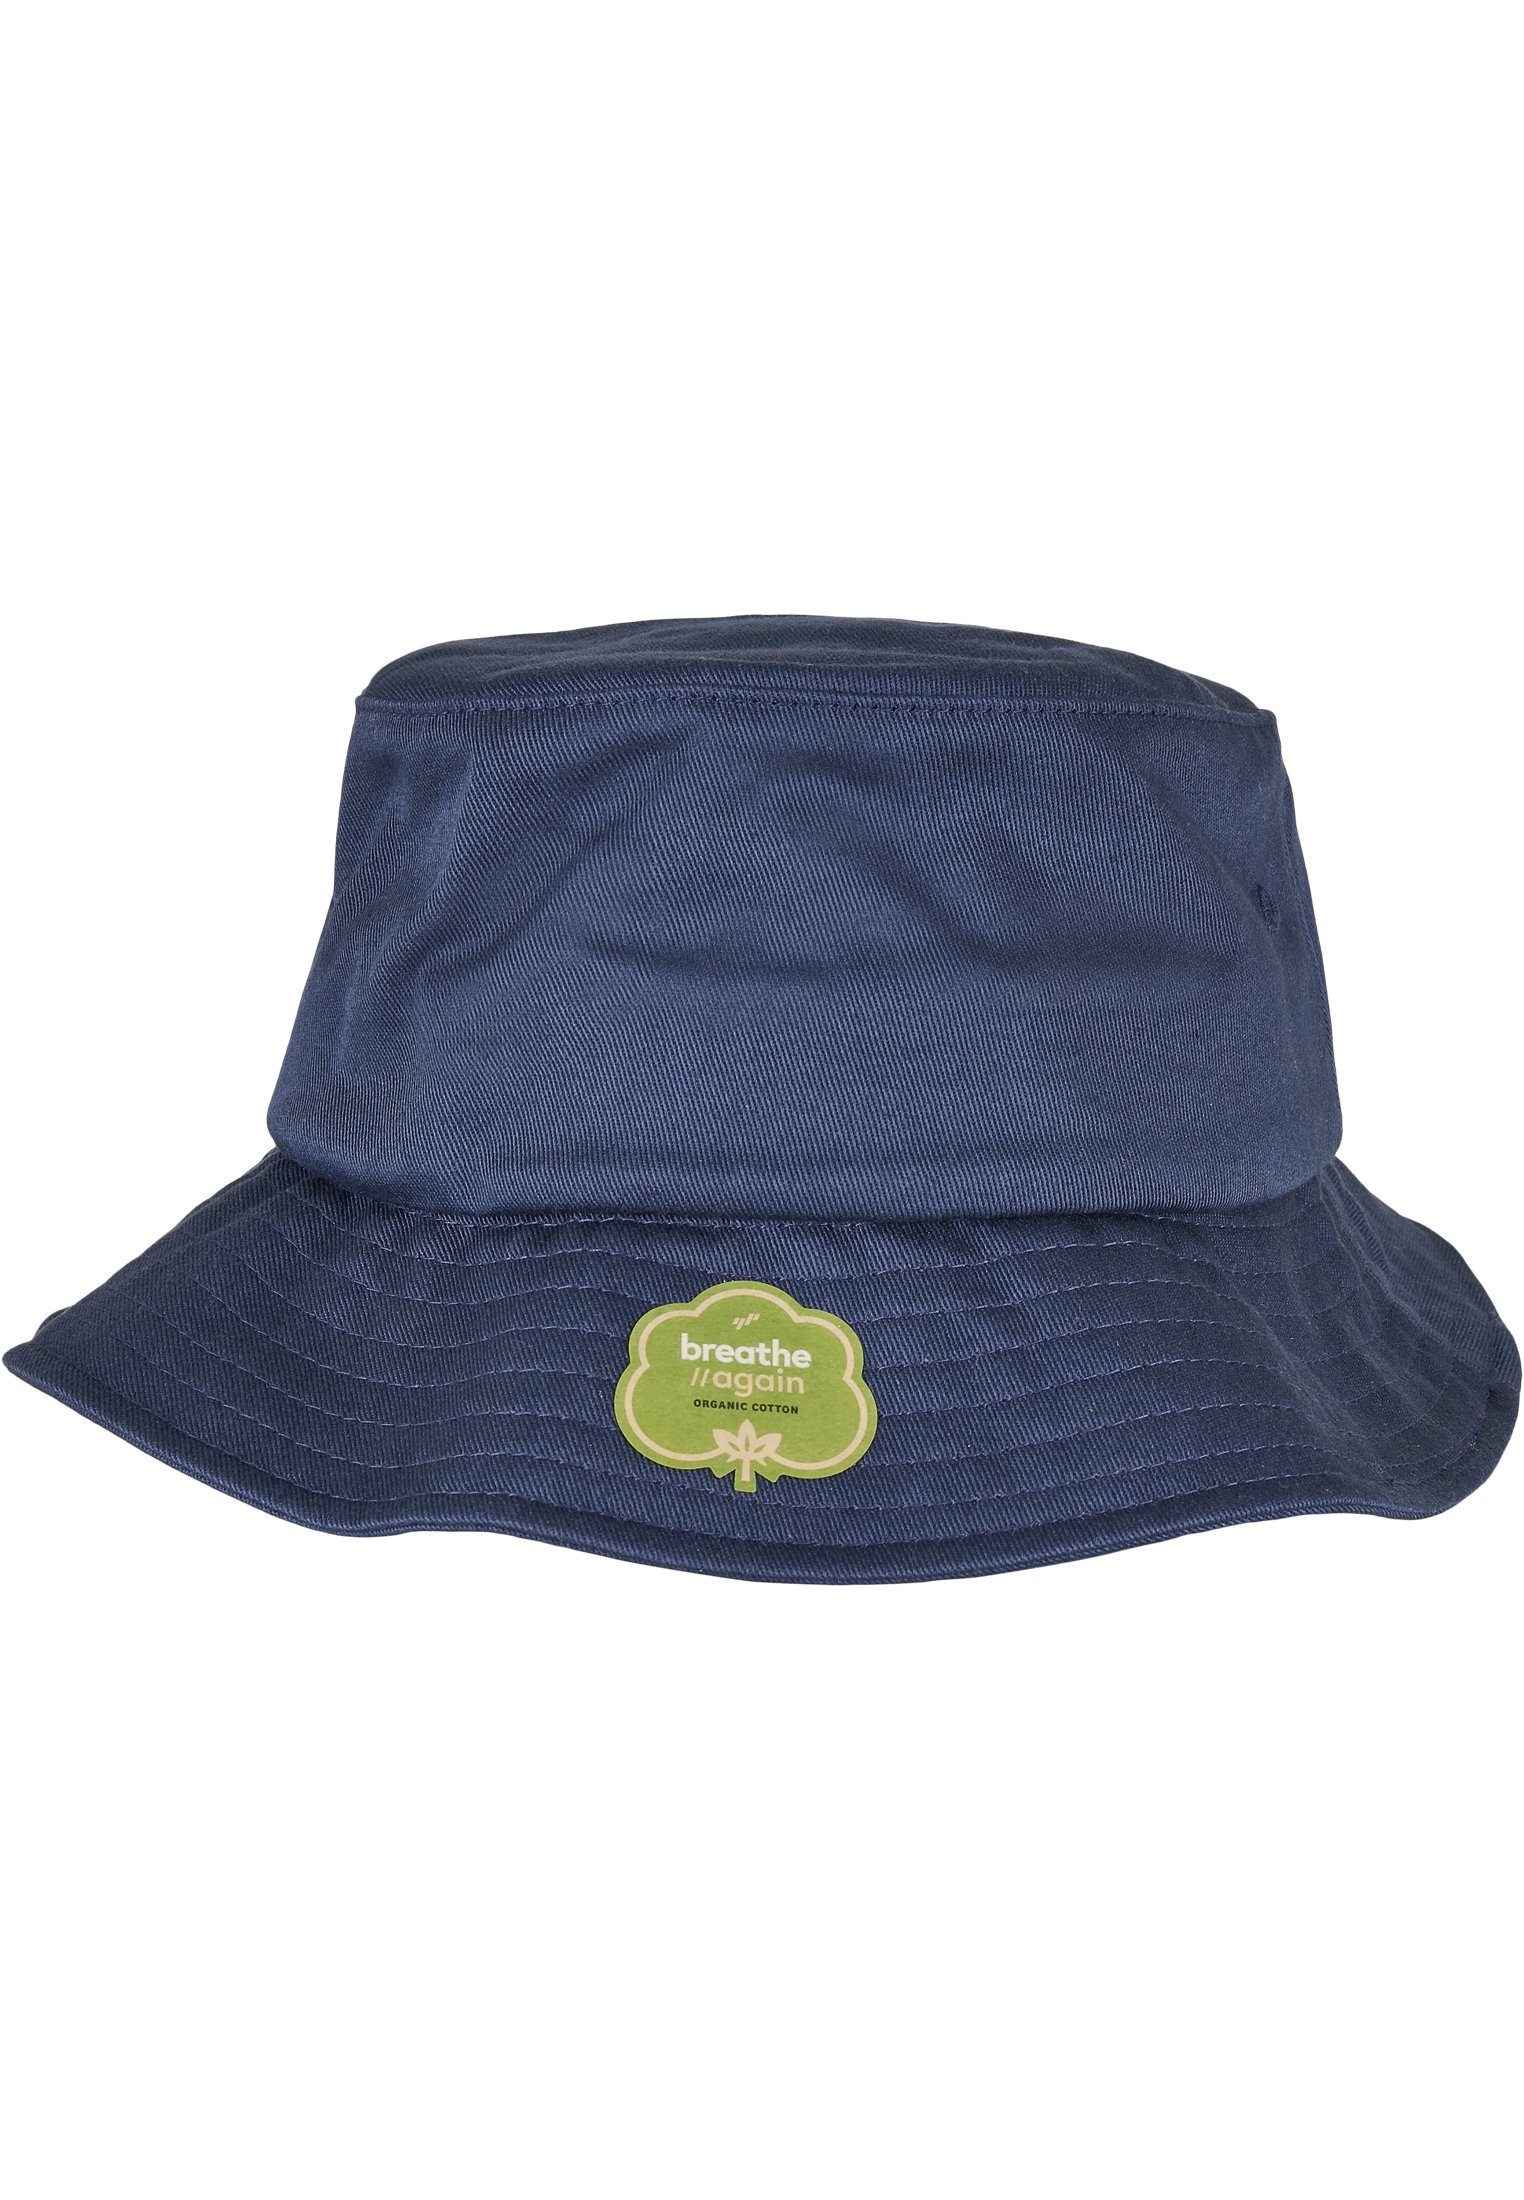 Organic Cotton Cap Hat navy Flex Accessoires Bucket Flexfit